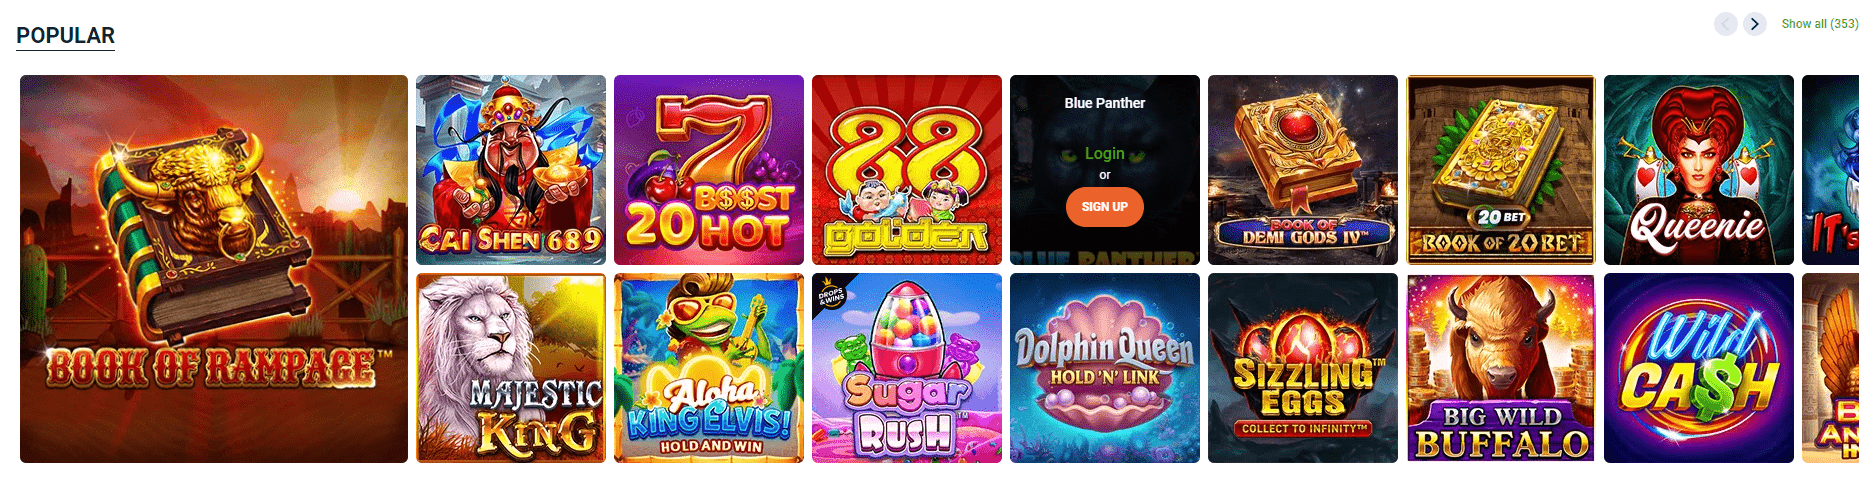 20Bet Casino Online games